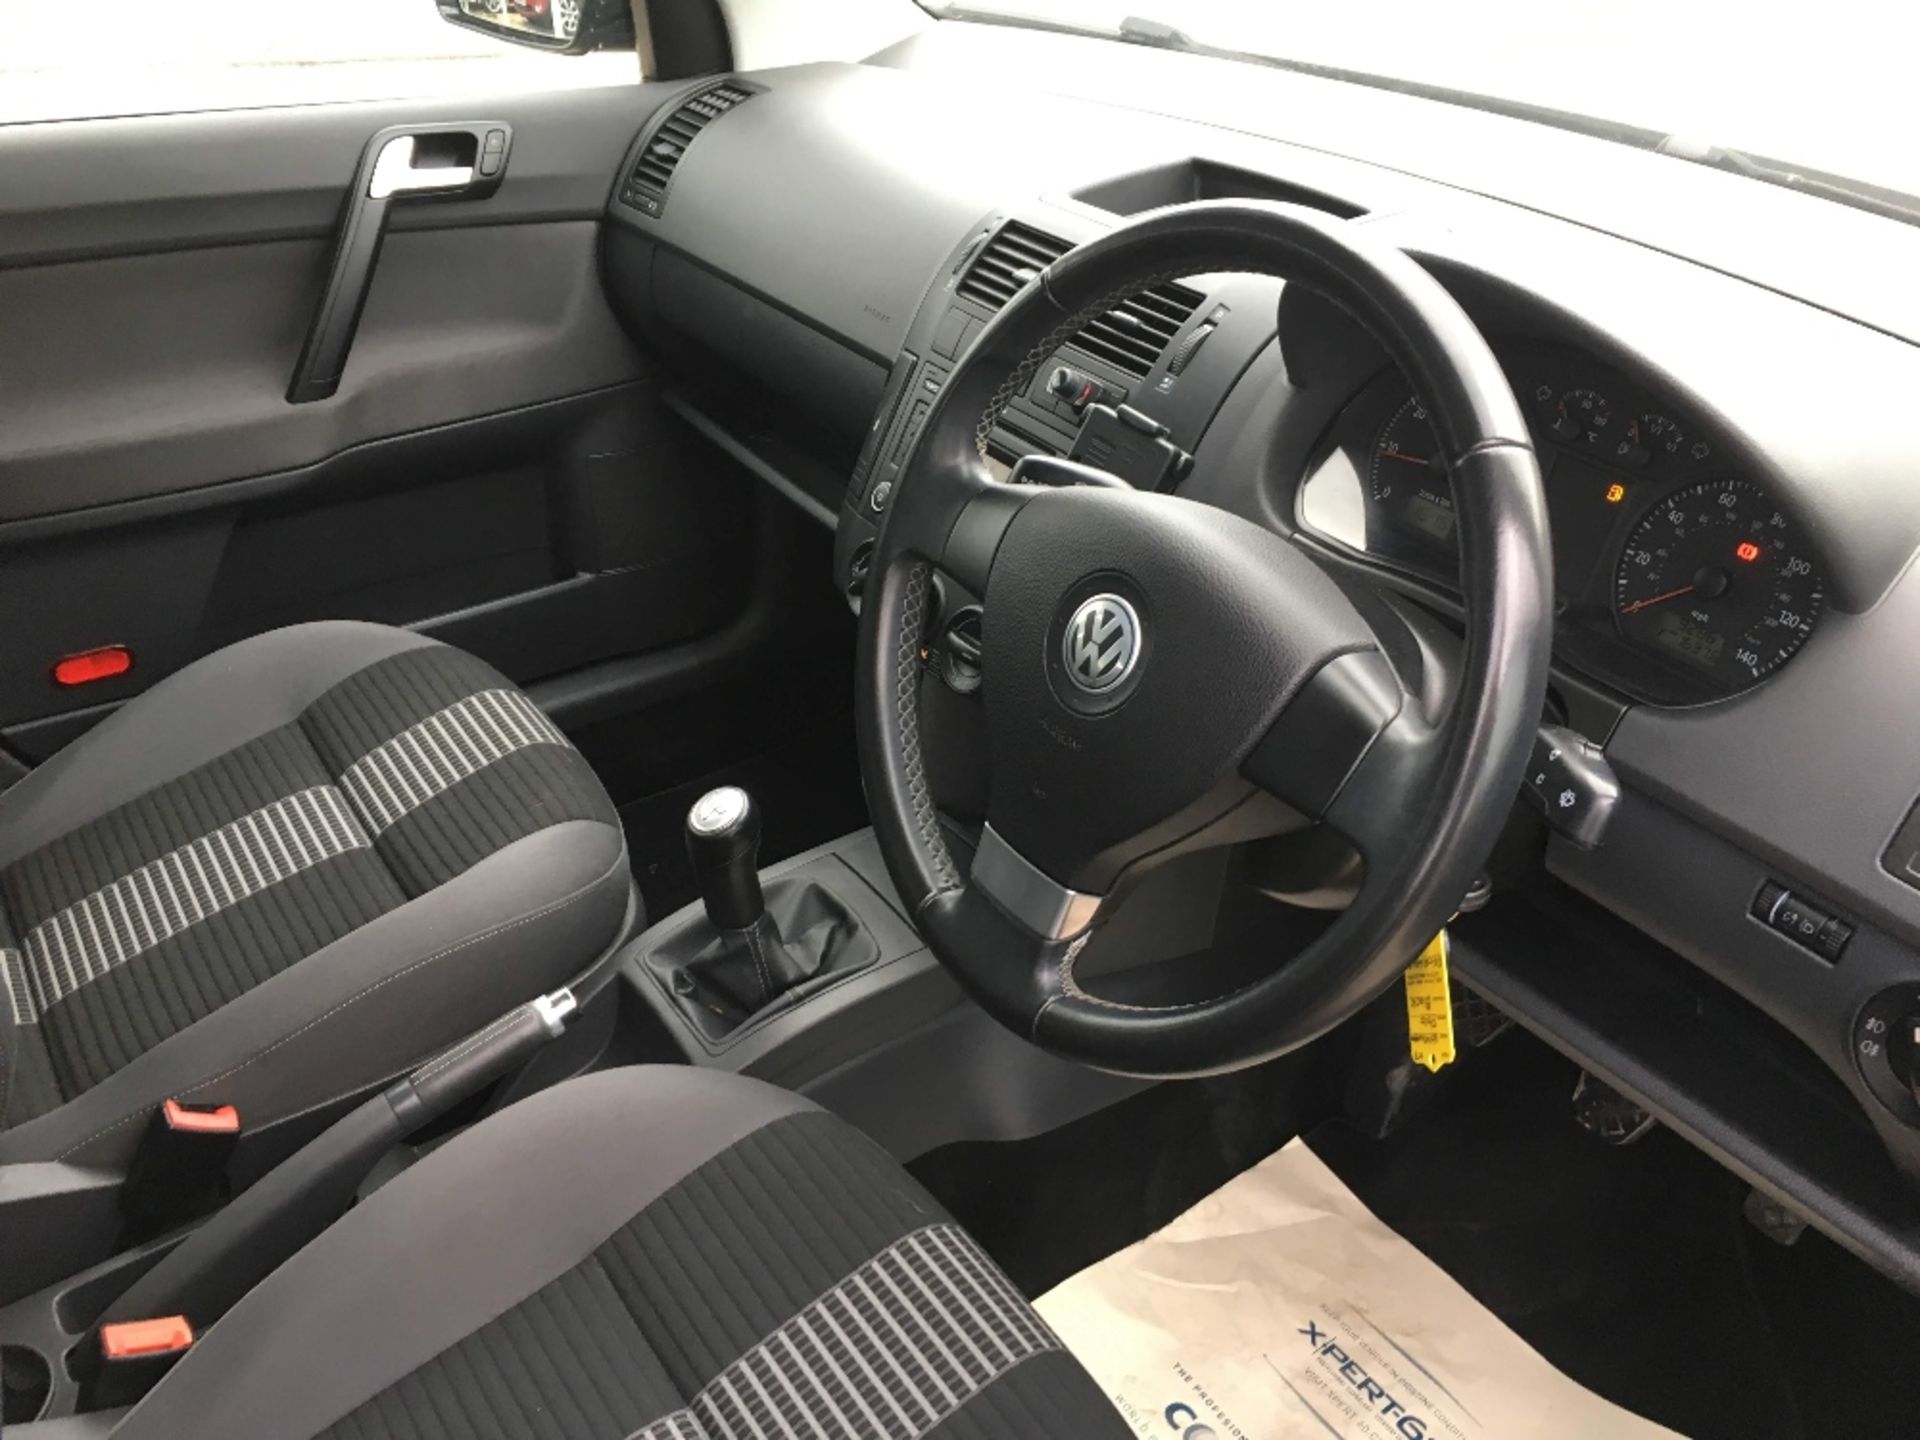 VW Polo 1.2 Match 5 Dr – Metallic Black - RE09 HHD Reg: RE09 HHDMileage: 92,867MOT:29-05-2019 – NO - Image 5 of 7